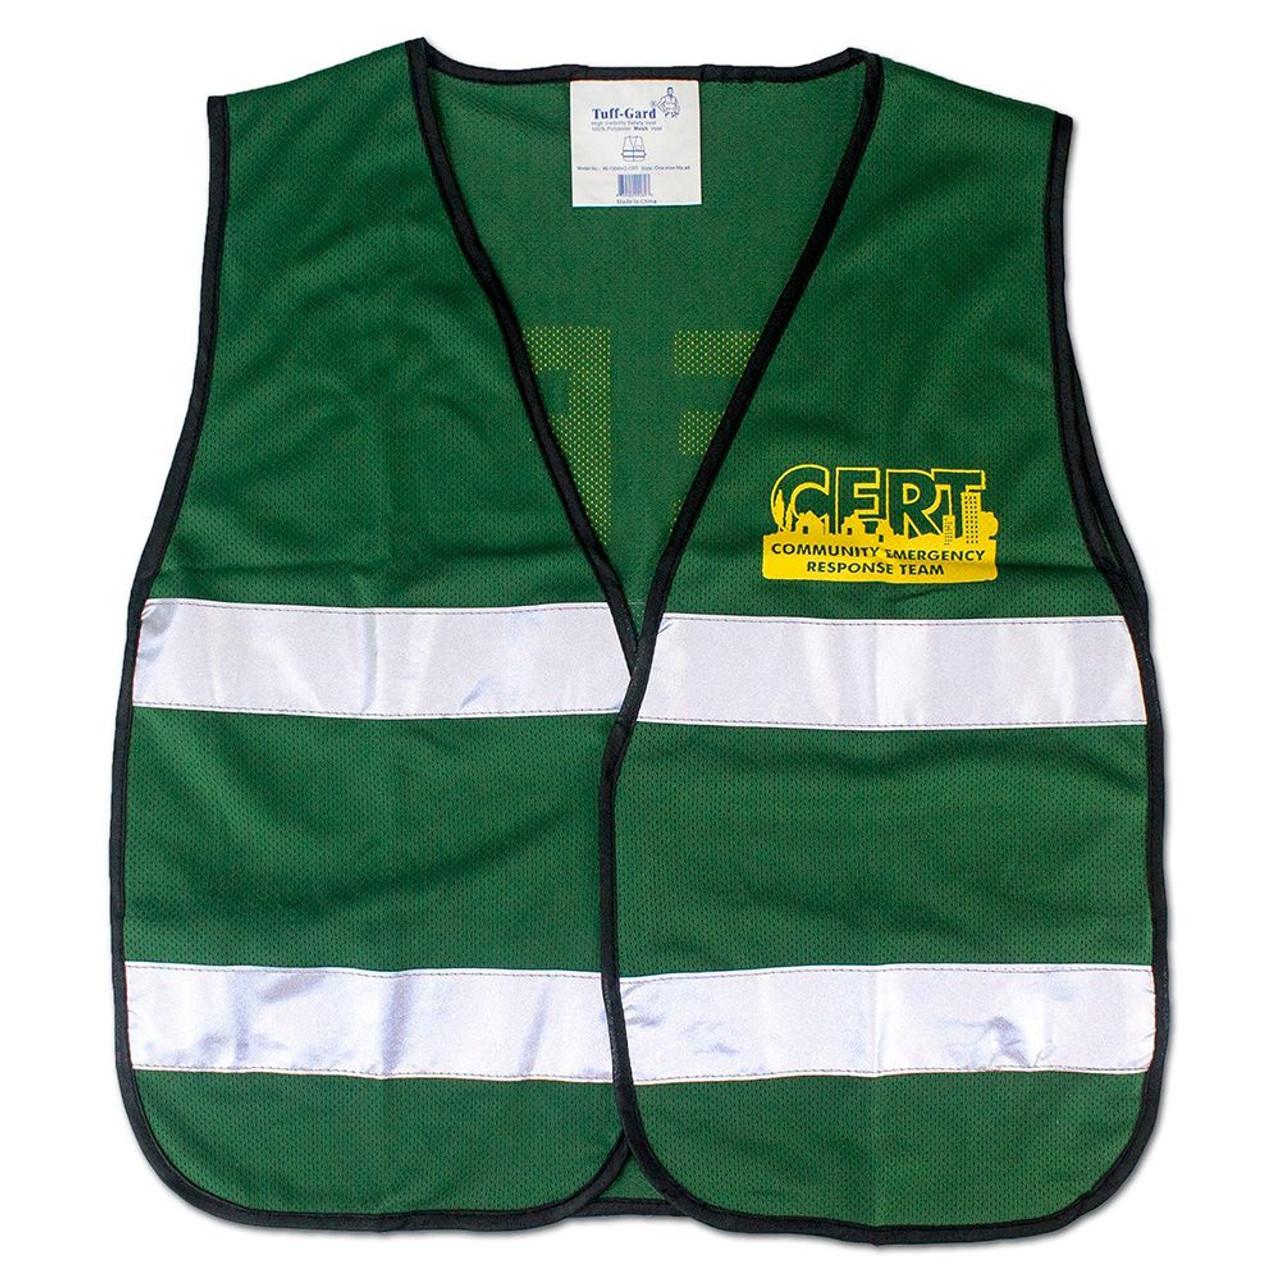 Green Safety Reflective Vest, Reflective Safety Vest Works